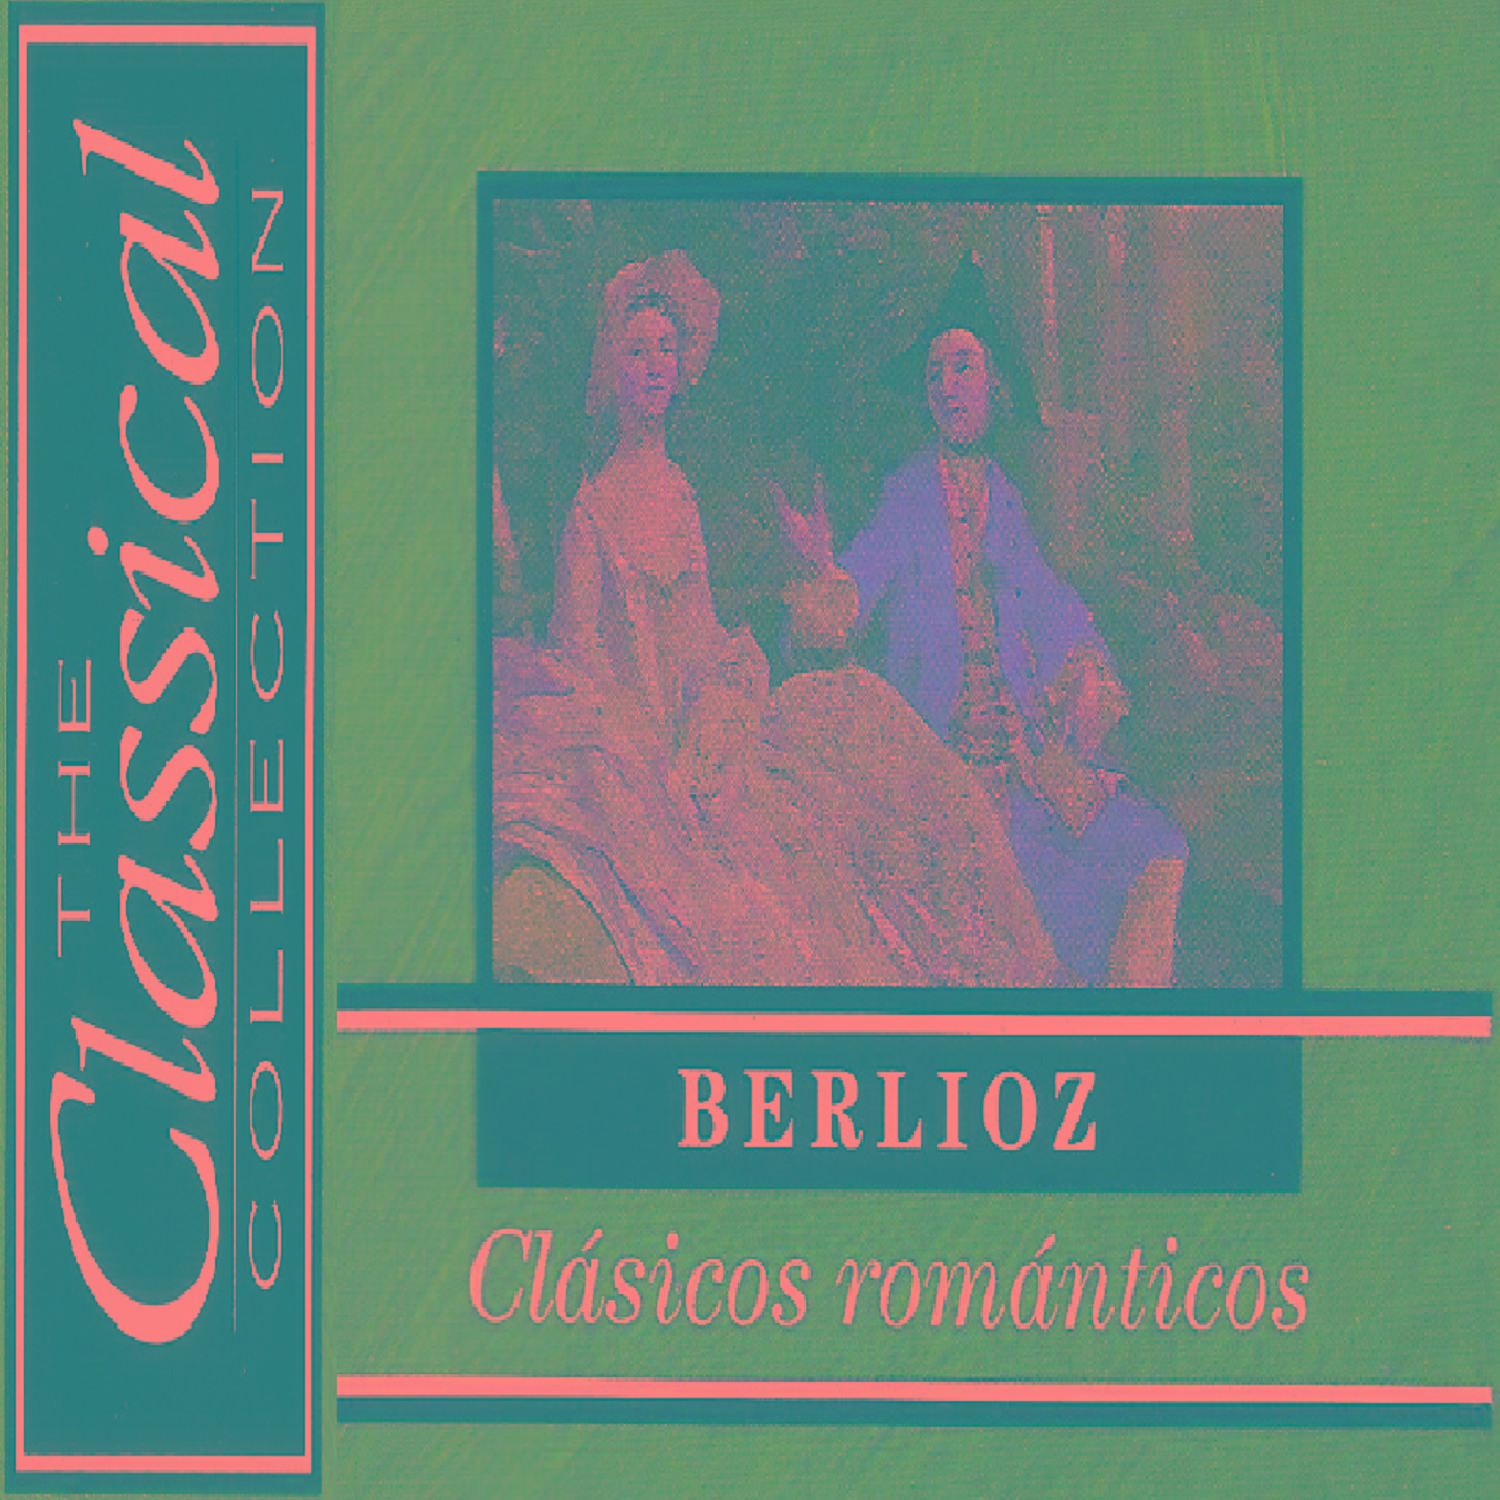 The Classical Collection - Berlioz - Clásicos románticos